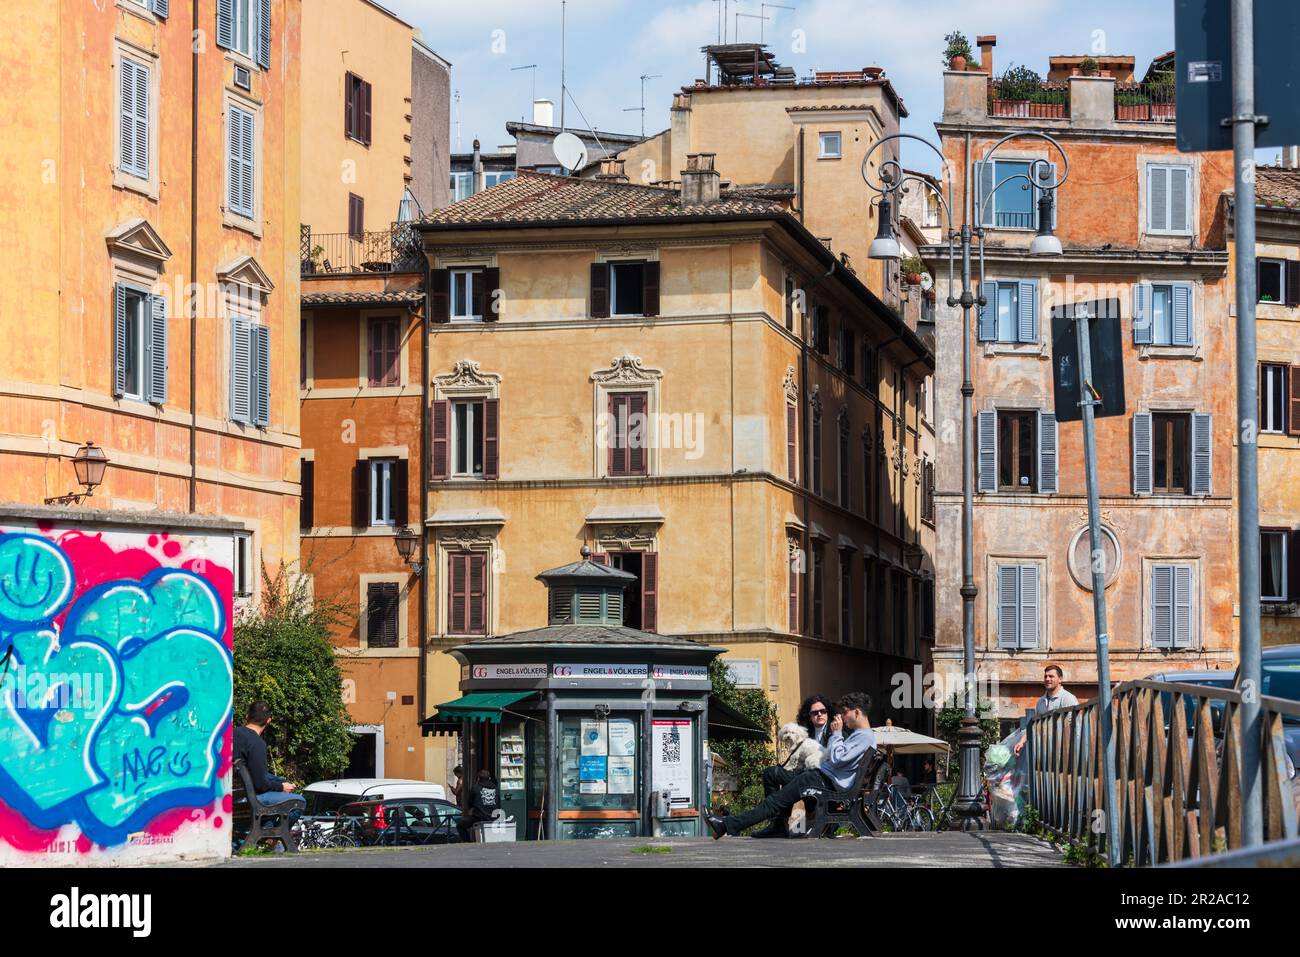 ROM, Italien, März 2023 Straßenszene ein Kiosk mit Gastronomie und Außensitzplätzen Ein Paar mit einem Hund auf einer Bank Sitzend, Huuswand mit Groß Foto Stock